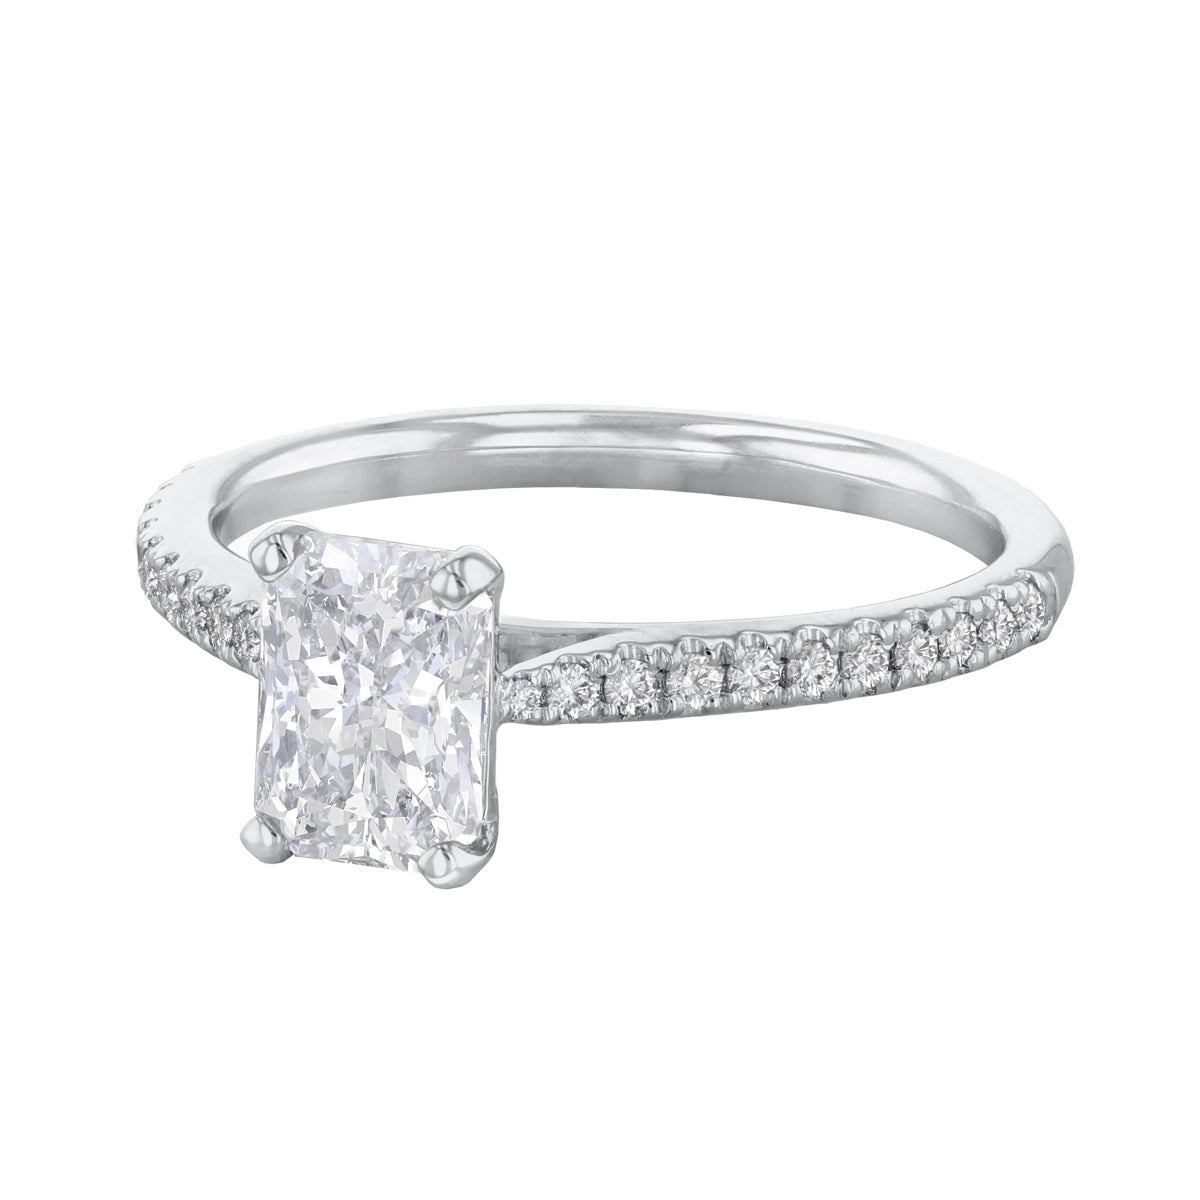 2-00ct-ophelia-shoulder-set-radiant-cut-solitaire-diamond-engagement-ring-platinum